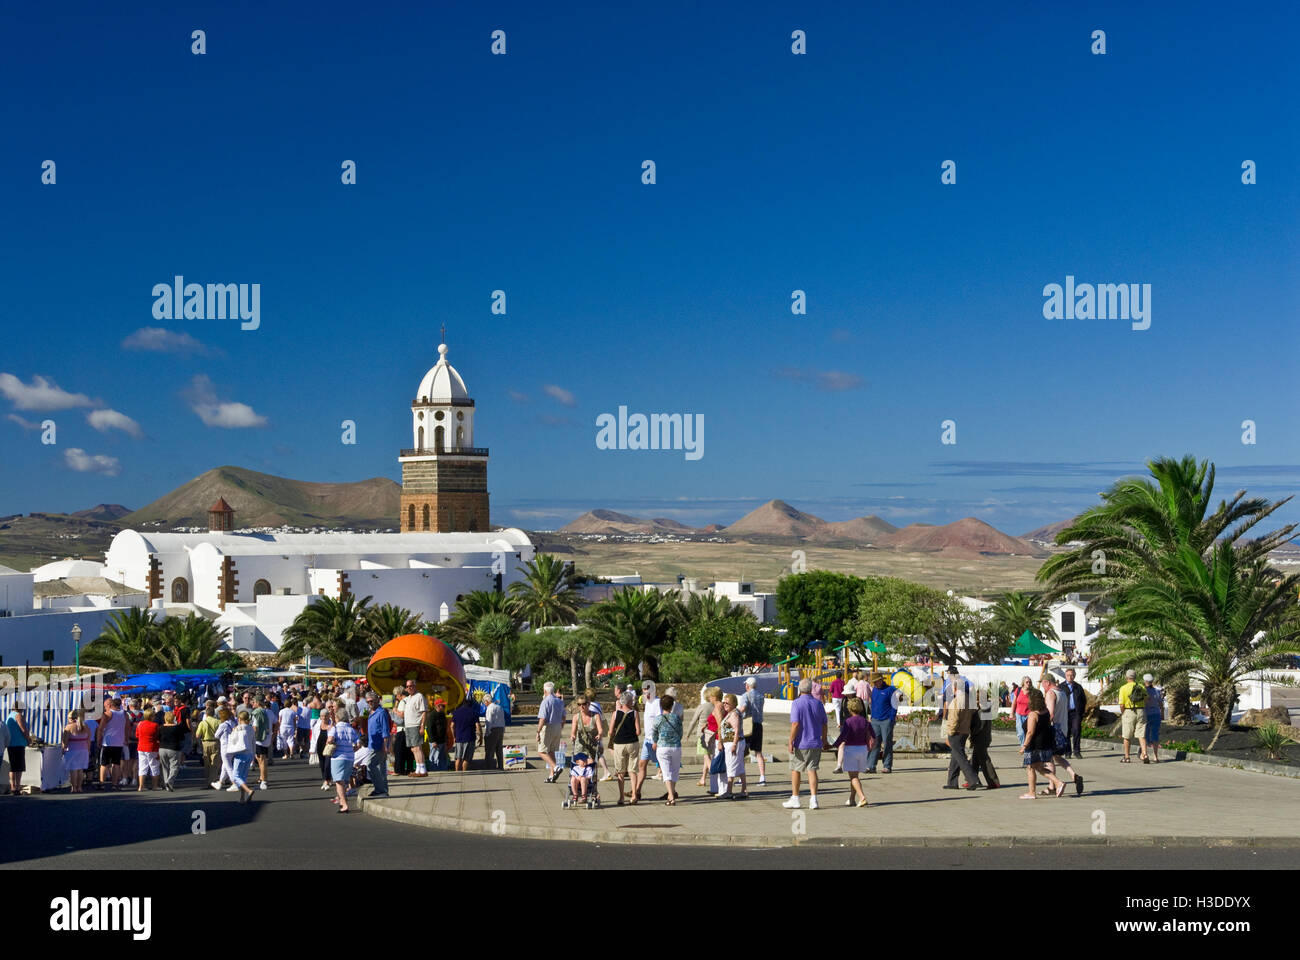 TEGUISE MARKET LANZAROTE i turisti in visita a popolare la domenica giorno di mercato in Teguise città vecchia con i vulcani dietro Lanzarote isole Canarie Spagna Foto Stock